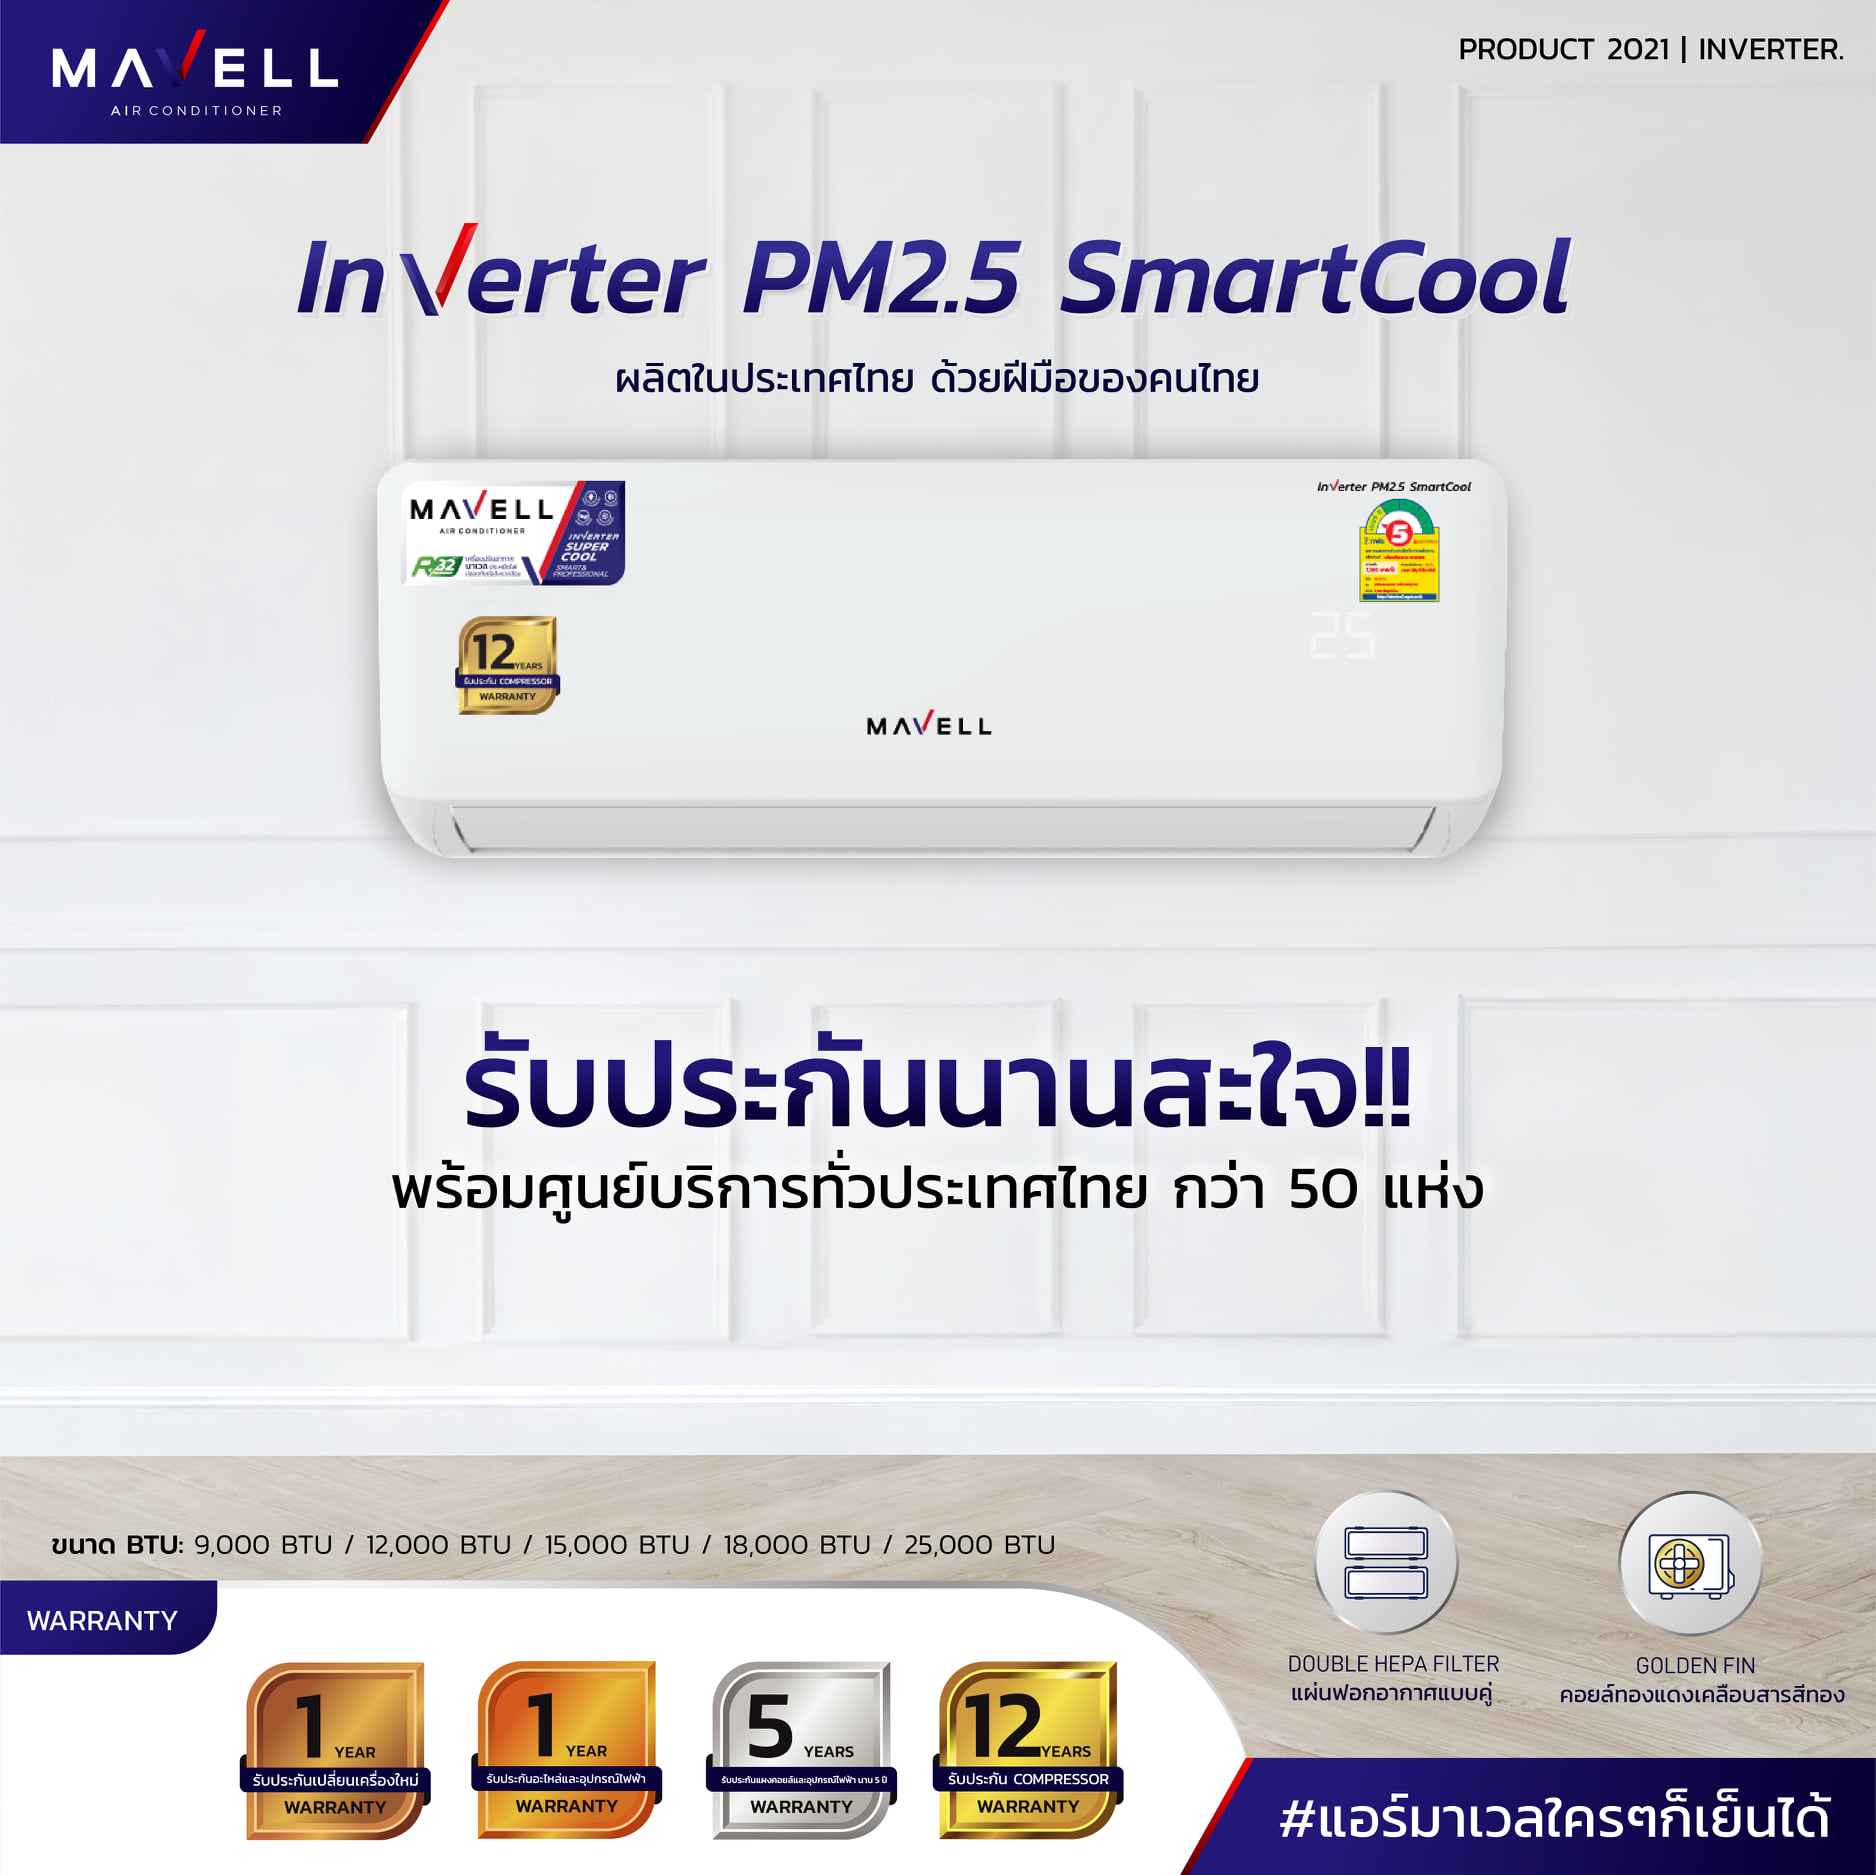 แอร์ Mavell Inverter PM2.5 Smartcool แอร์ใหมล่าสุดปี 2021 น้ำยา R32 รับประกันอะไหล่ 5 ปี คอมเพลสเซอร์ 12 ปี รับประกันเปลี่ยนเครื่องใหม่ภายใน 1 ปี